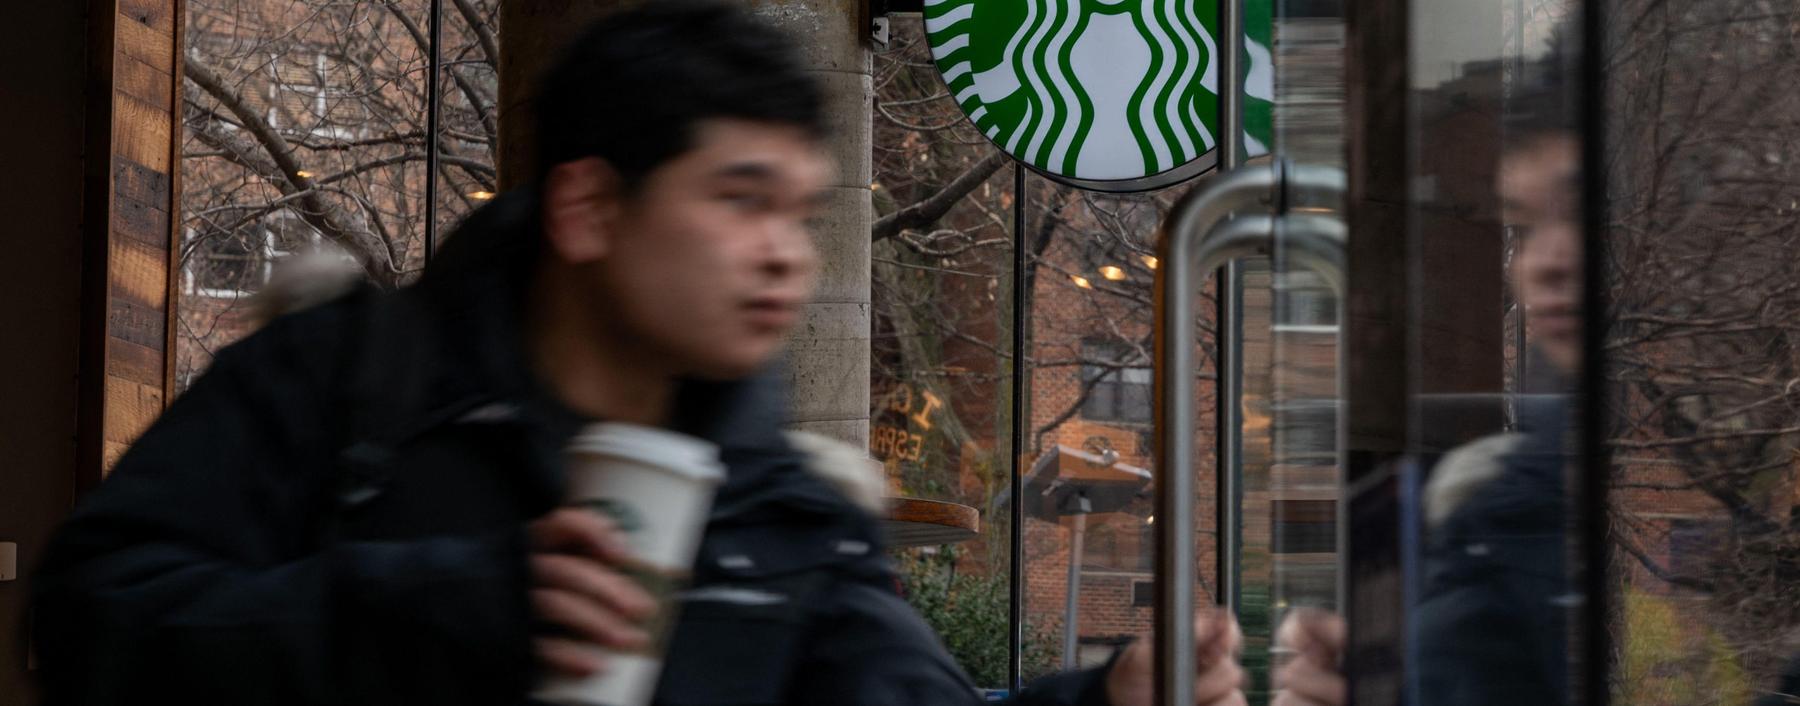 Der Umsatz in den bestehenden Filialen von Starbucks ging zuletzt um vier Prozent zurück.